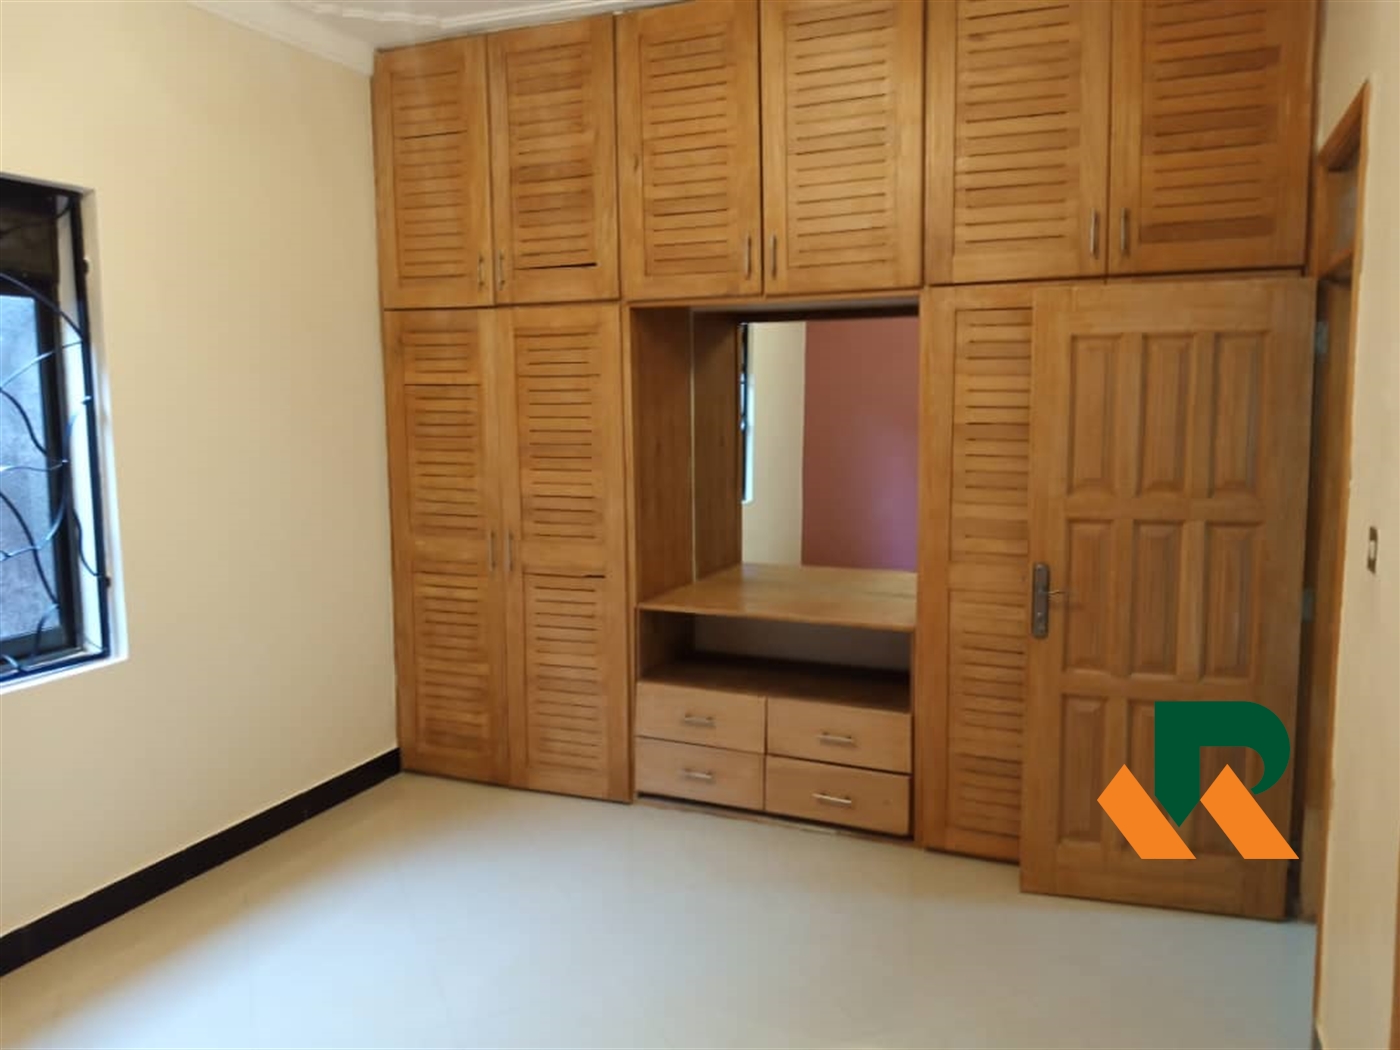 Apartment for sale in Kyaliwajjala Kampala